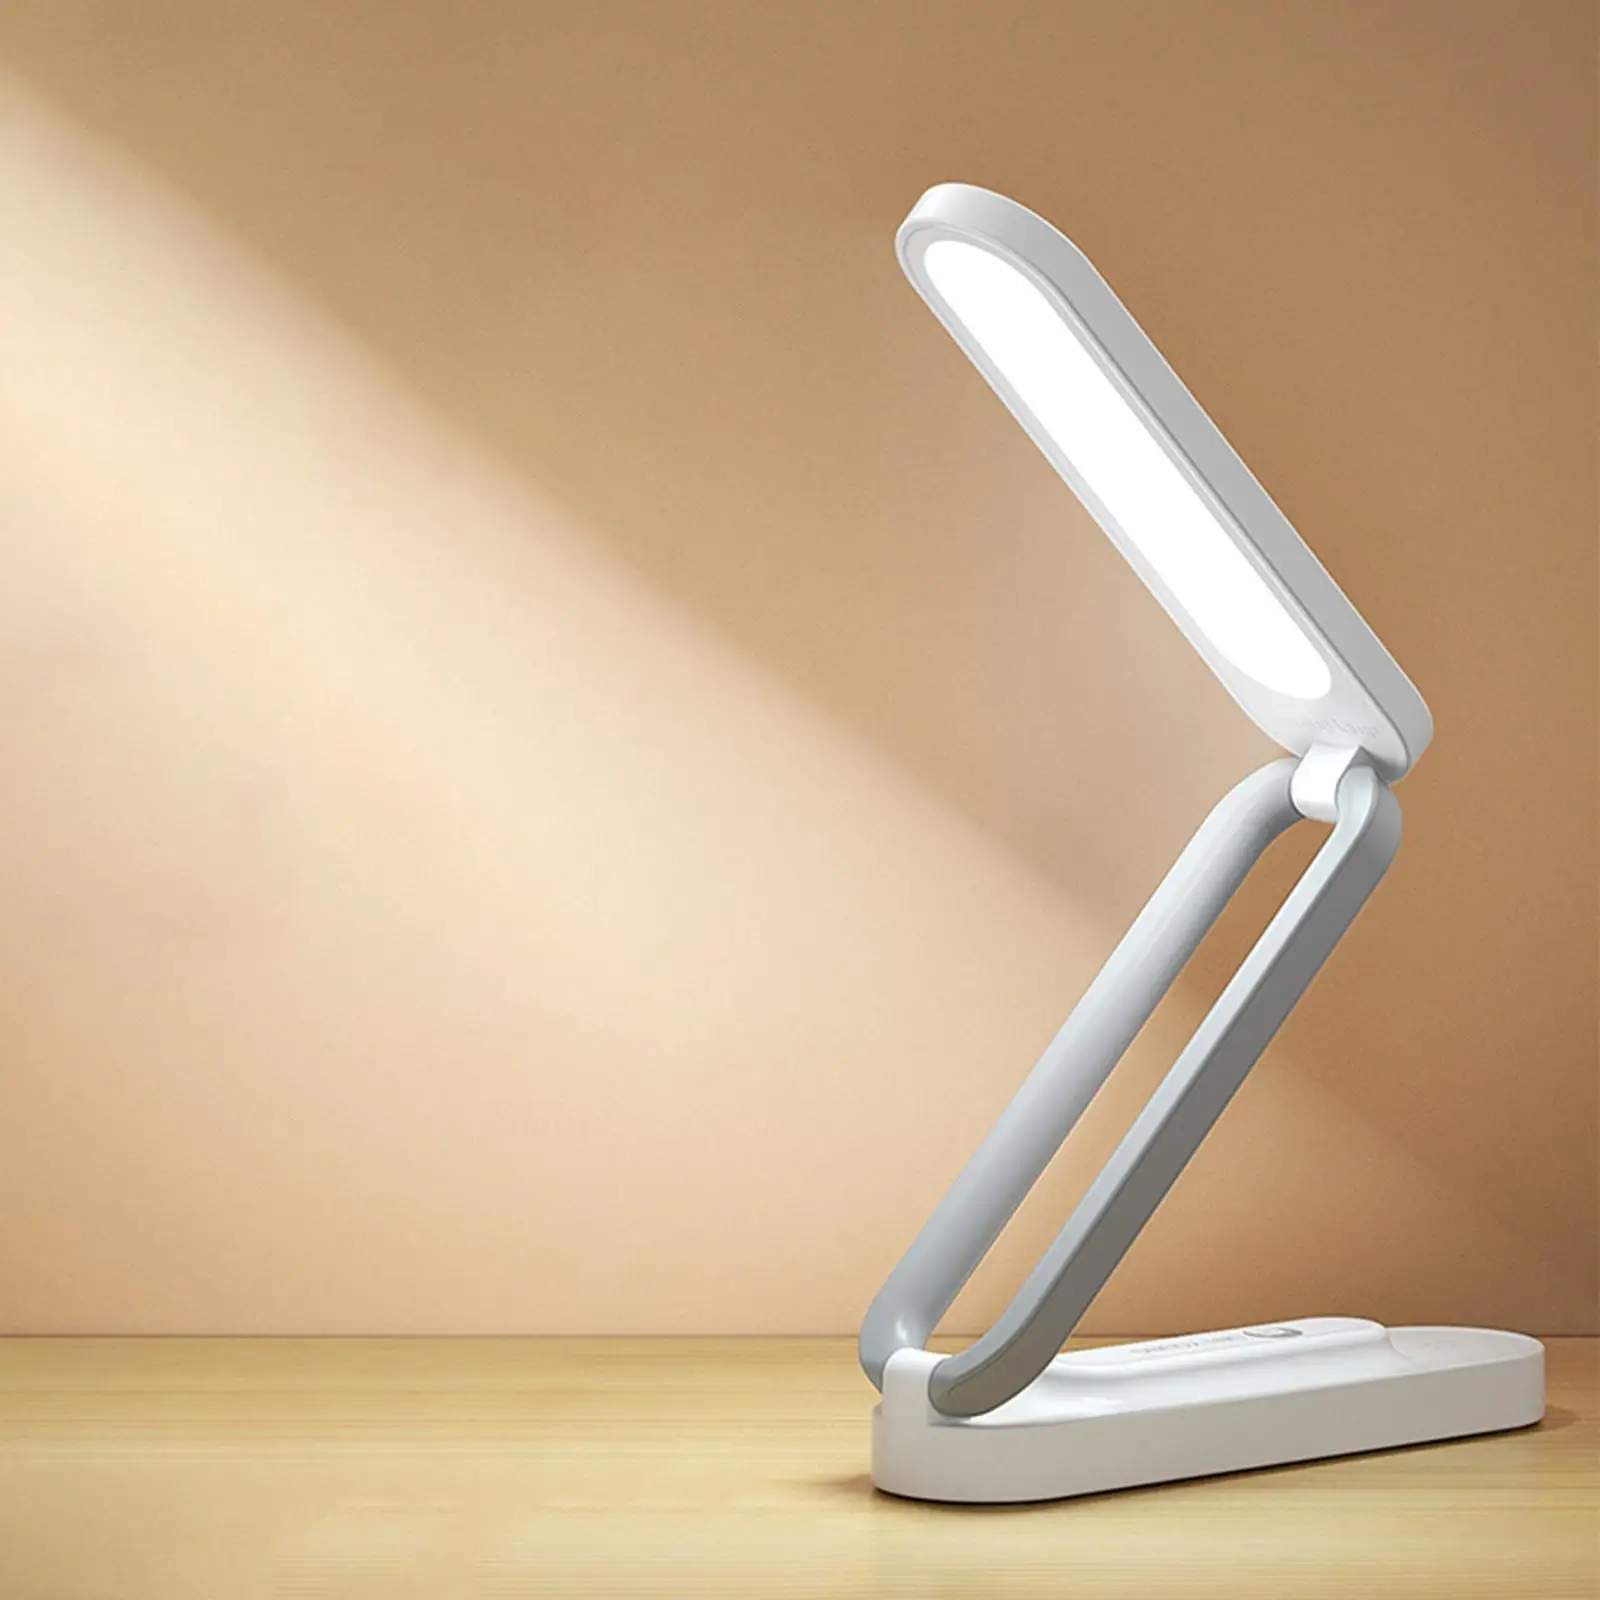 Rechargeable Table Light Eye Caring 3 Lighting Modes LED Folded Desk Lamp Night Light for Home Working Bedroom Children Student